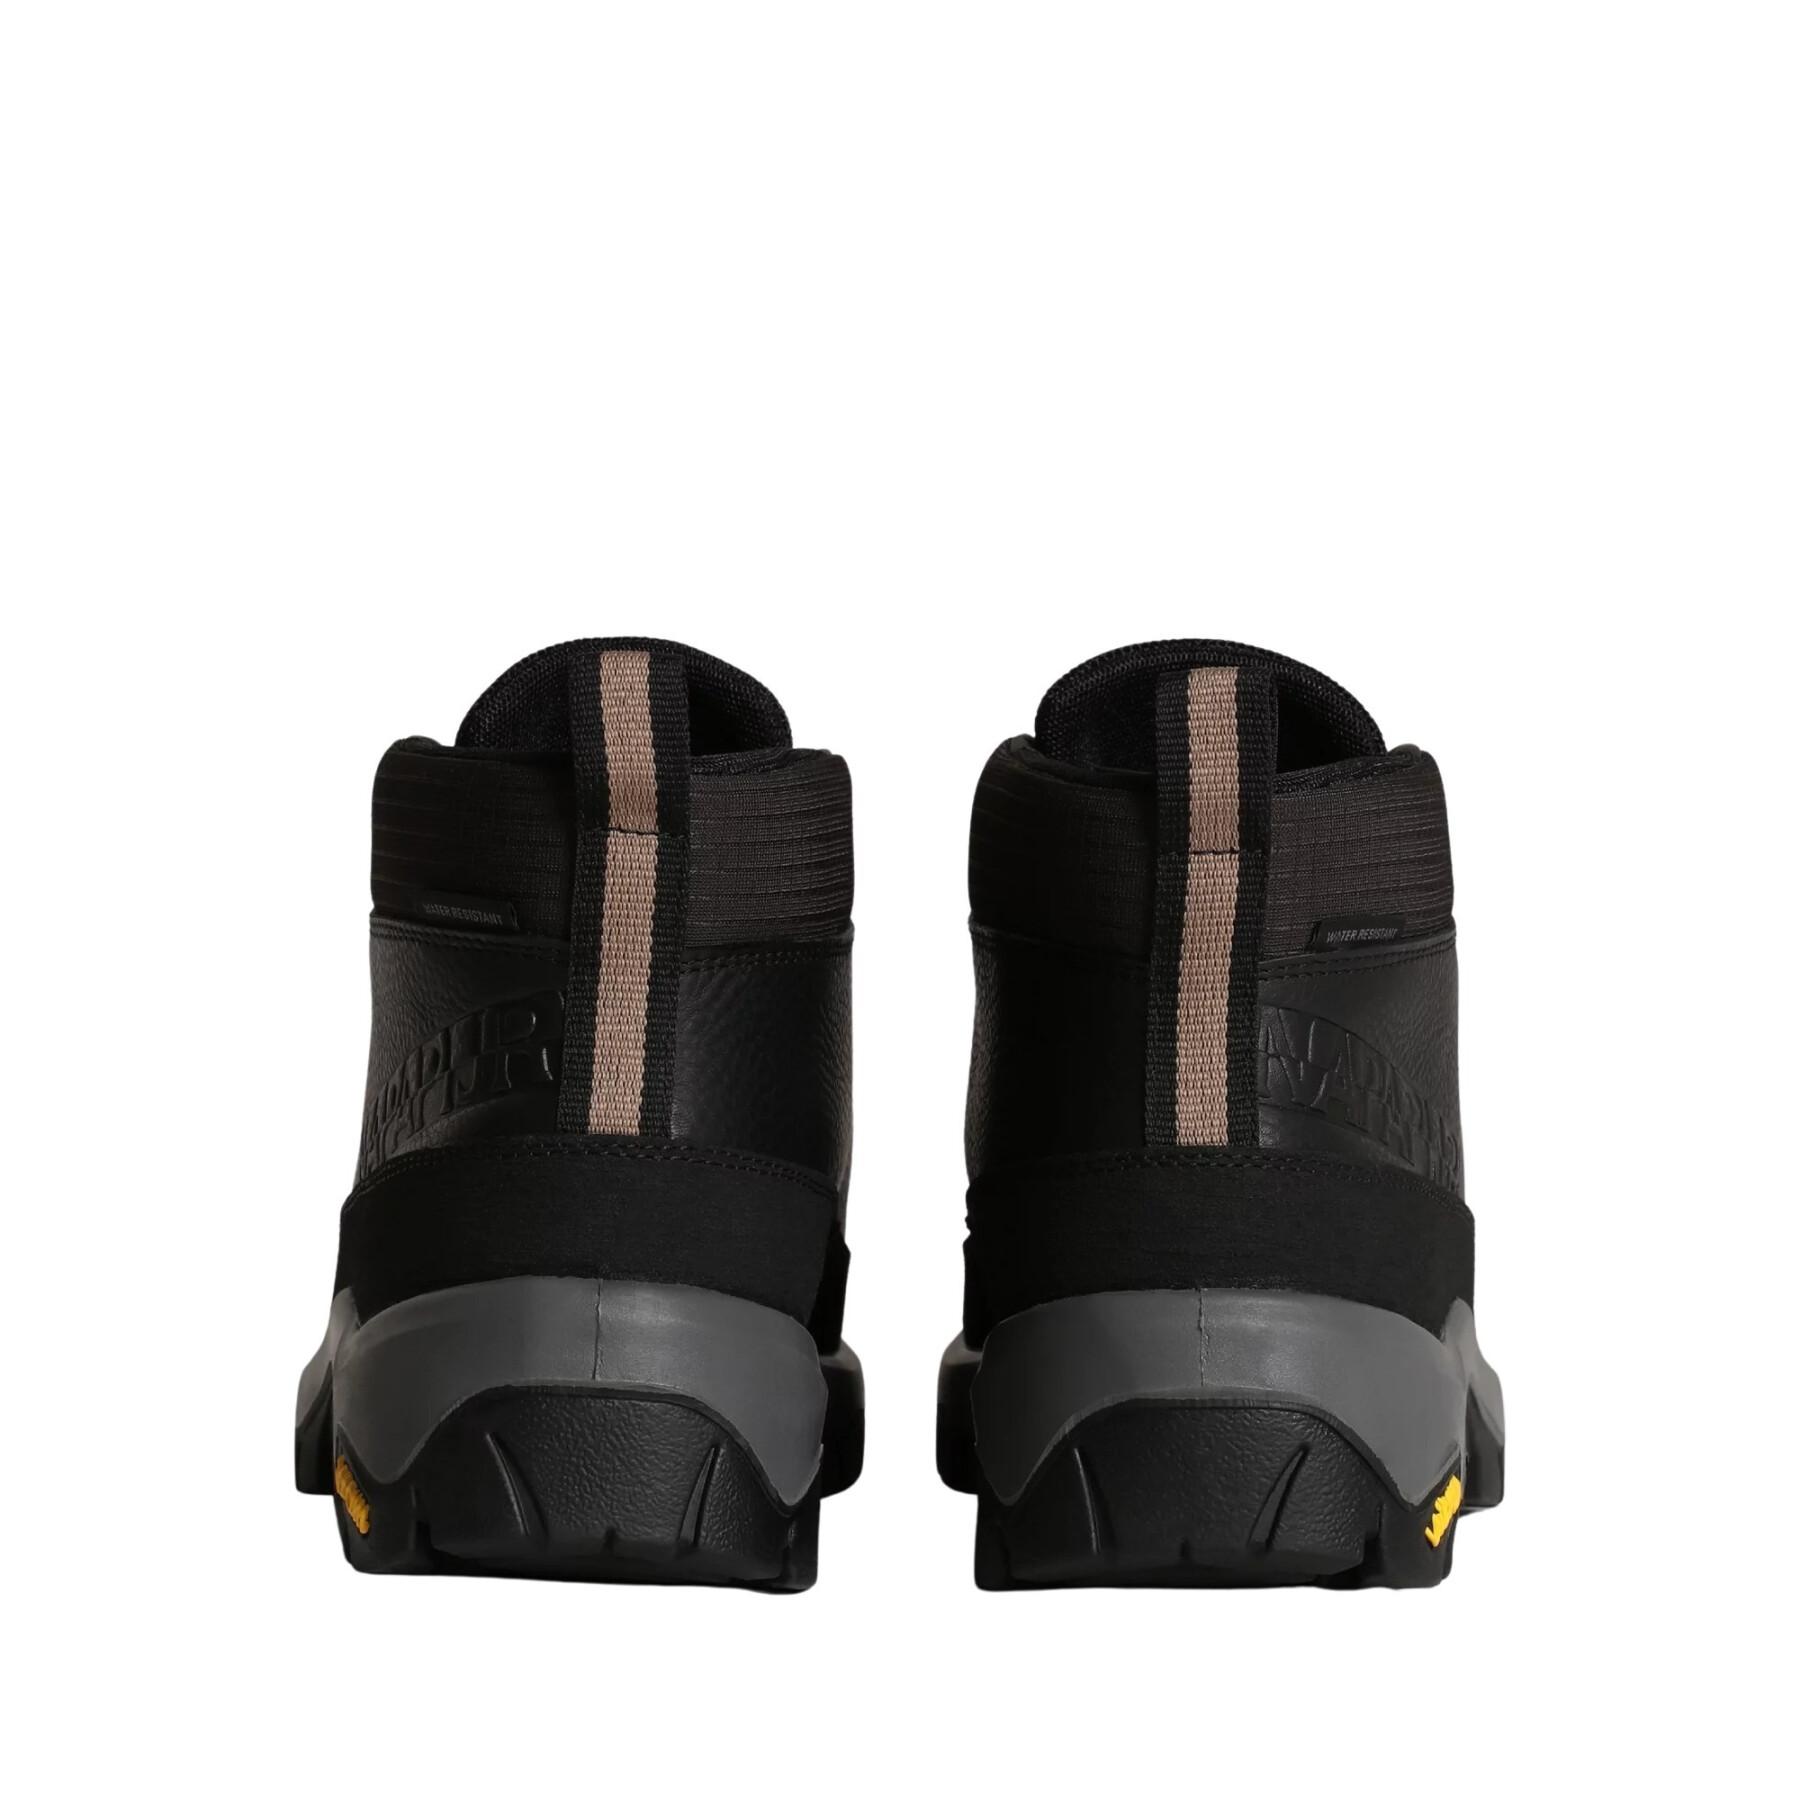 Waterproof leather hiking boots Napapijri